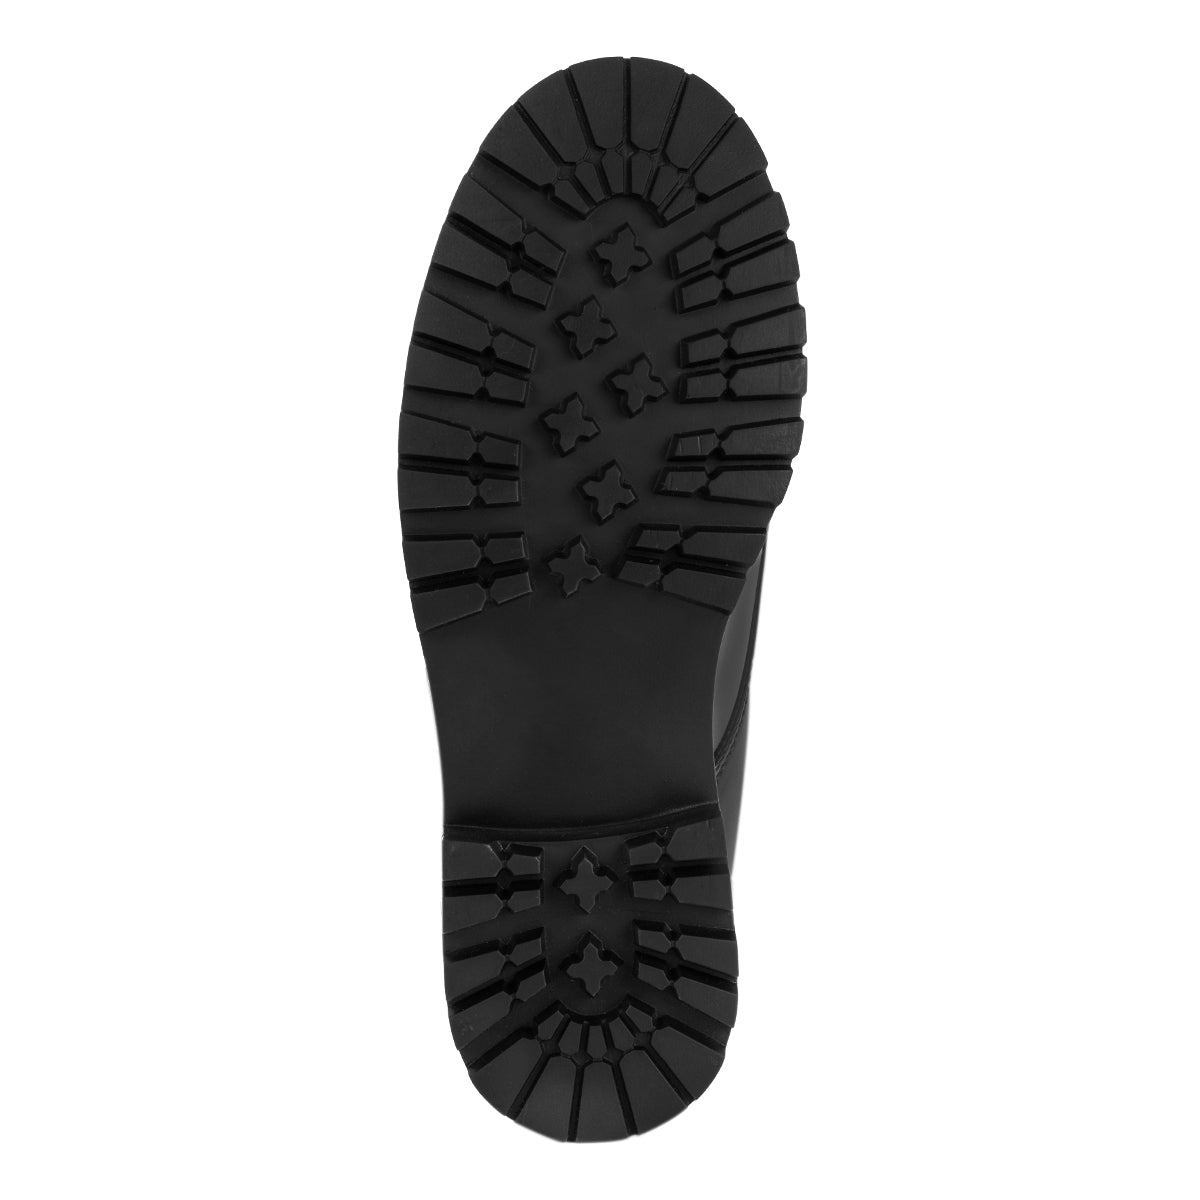 Zapato Moda Negro Dama Blasito 01161